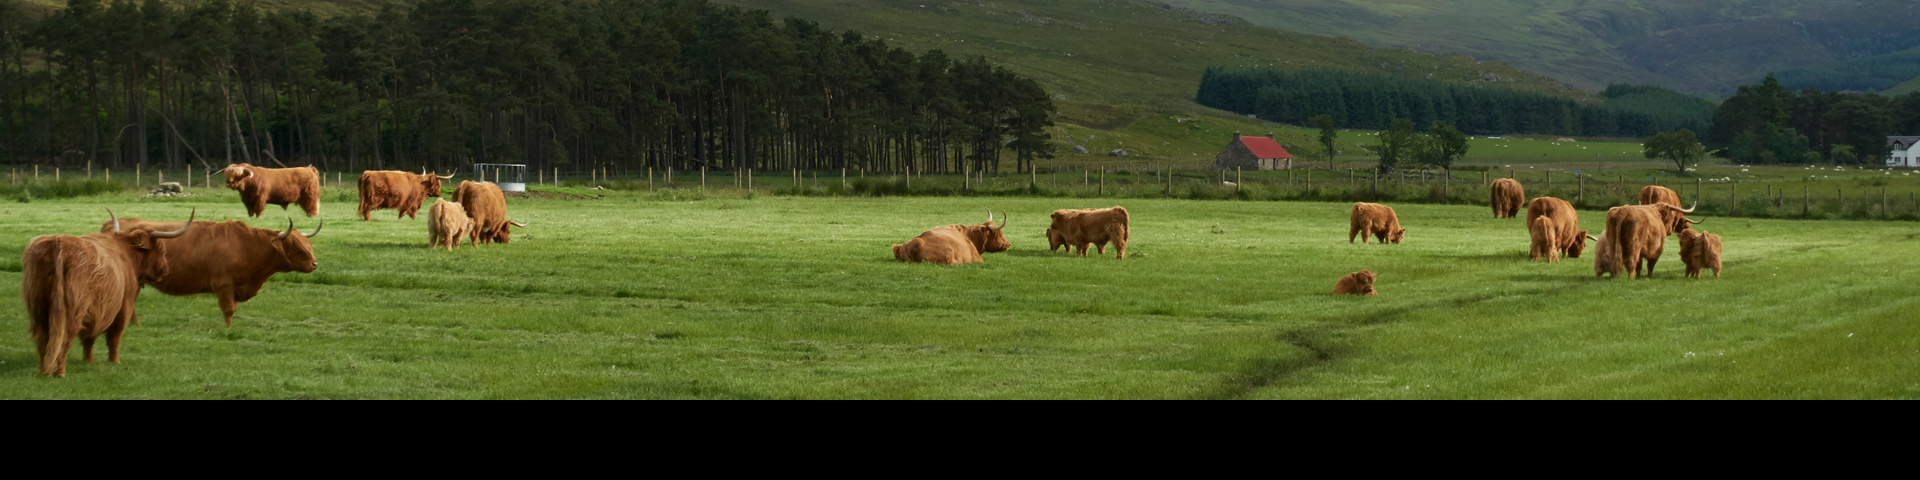 Cows in a farm field